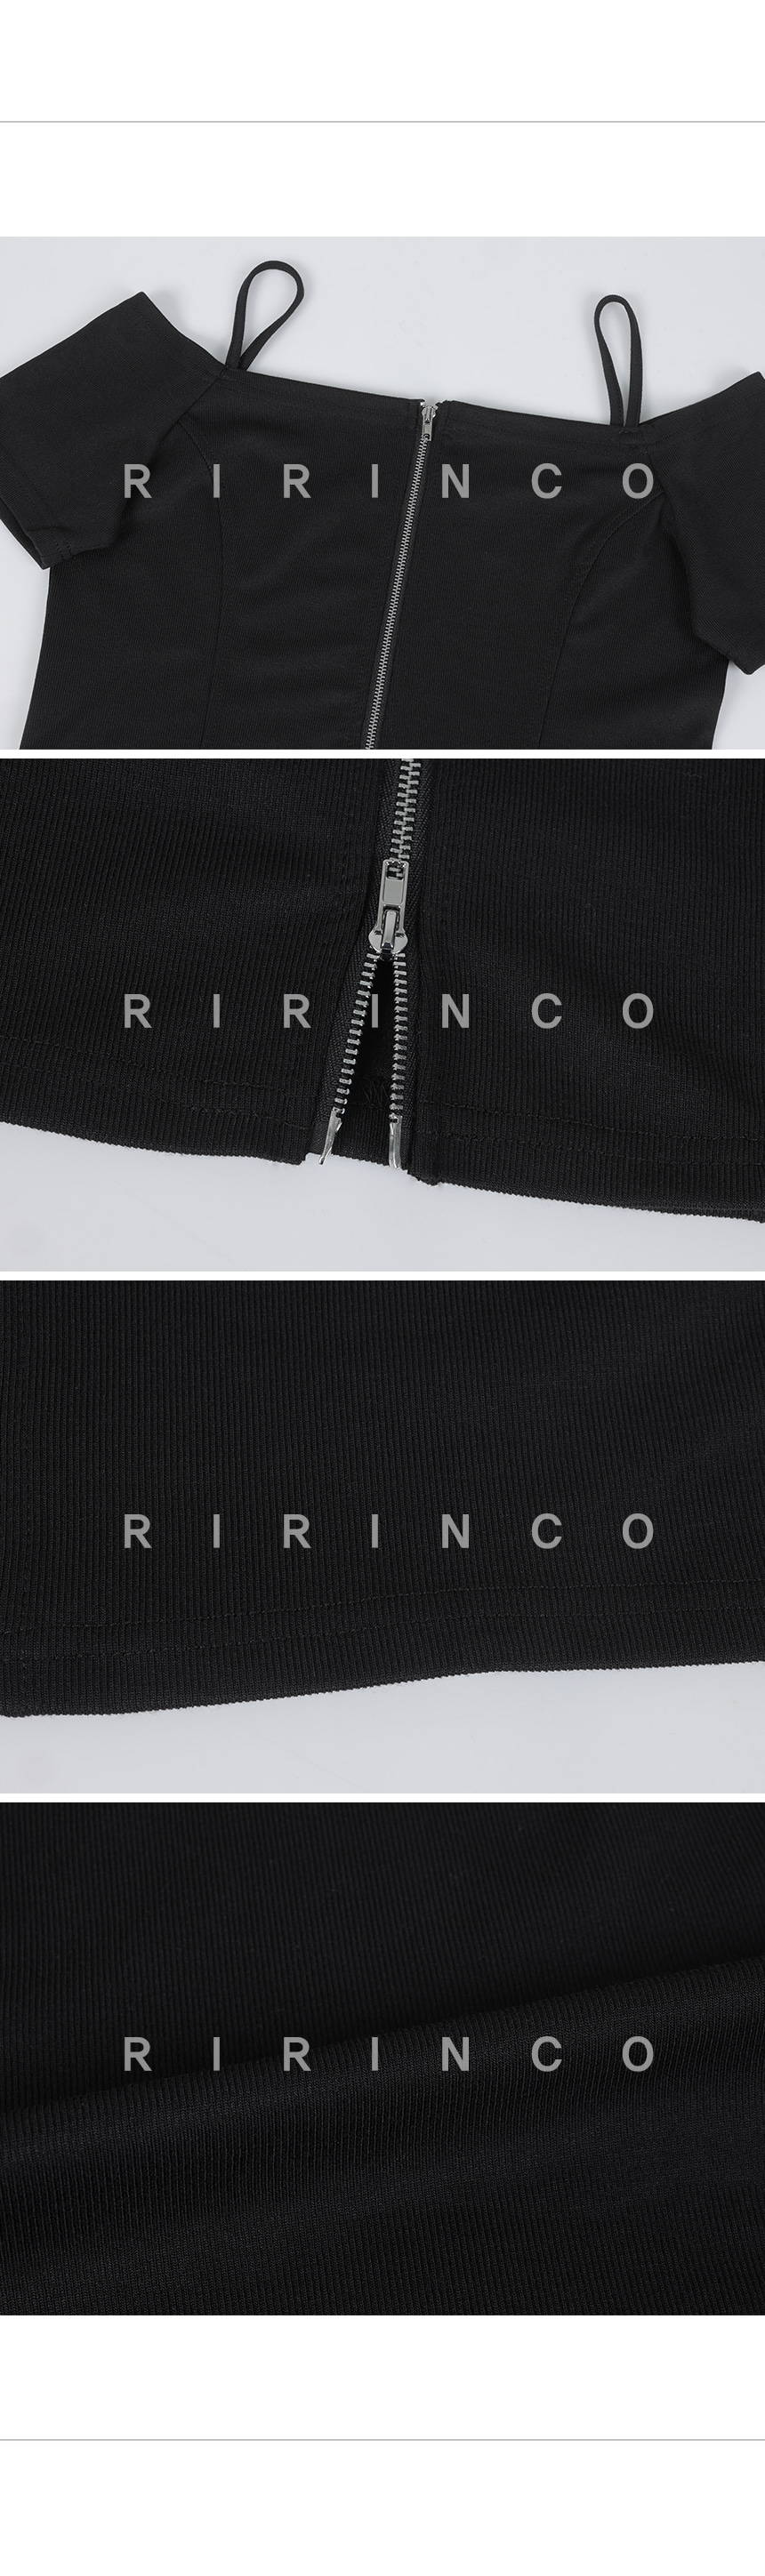 RIRINCO リブオフショルダーツーウェイジップアップ